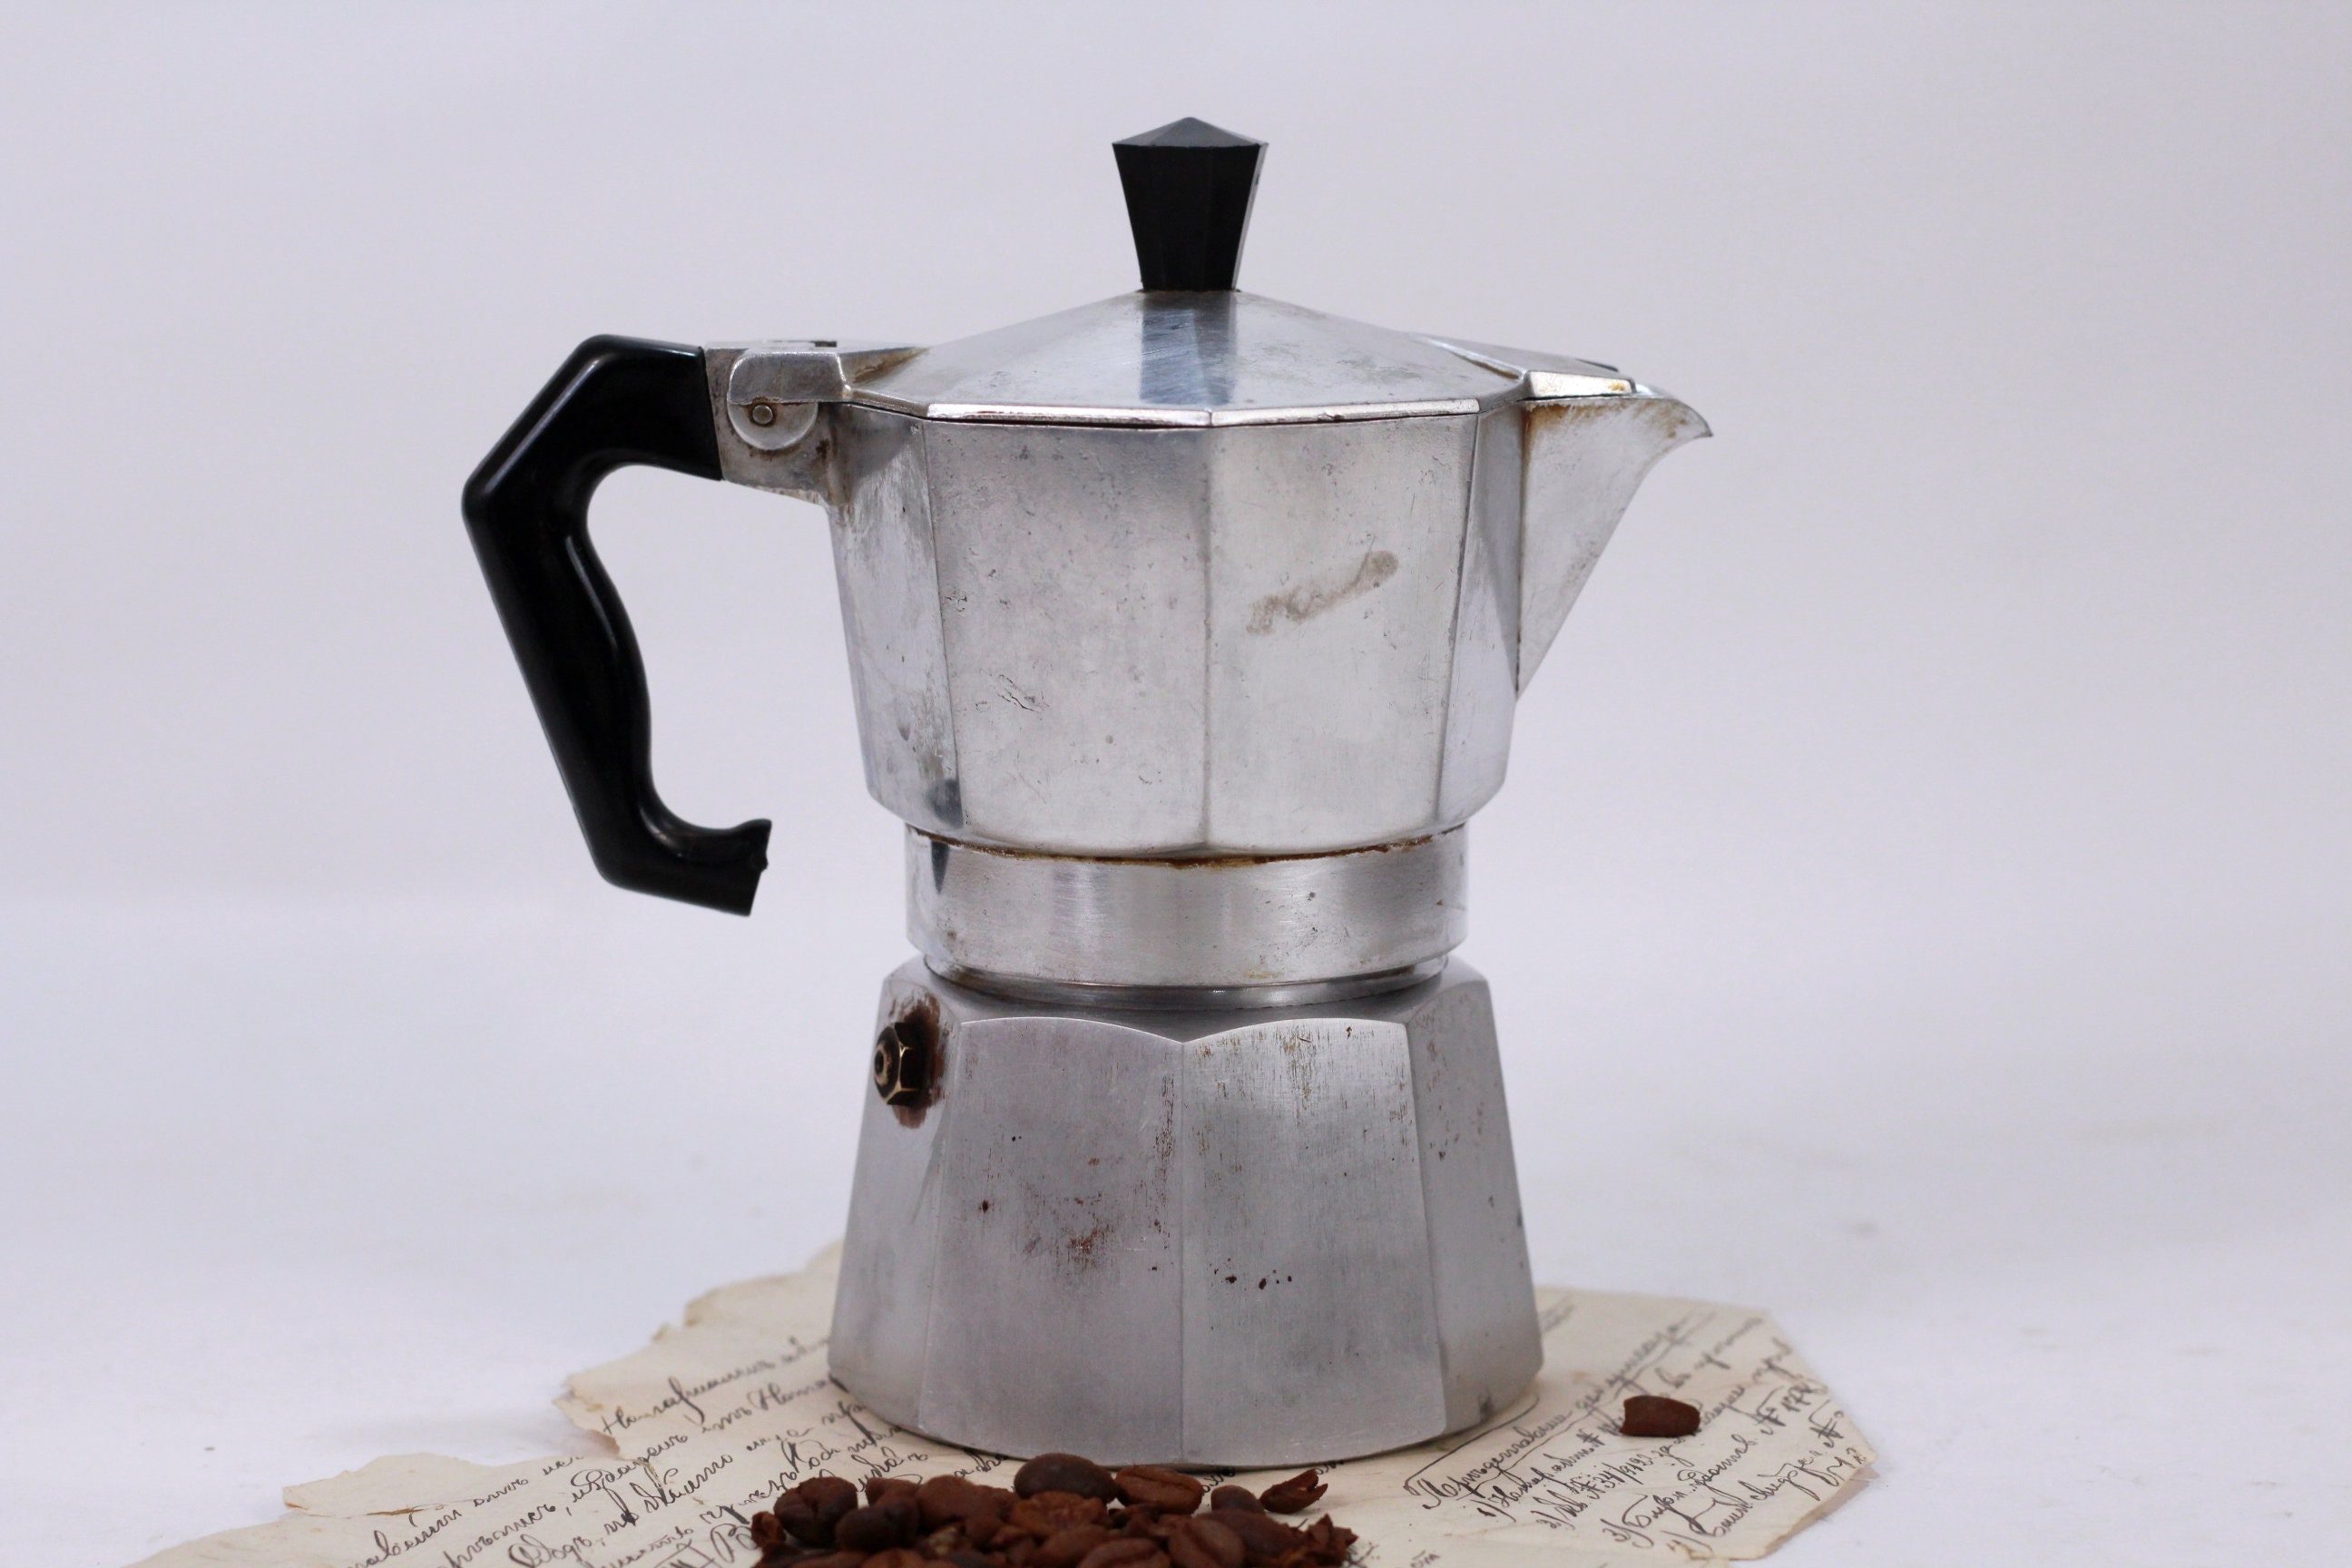 Coffee Maker Italian, Espresso Coffee Maker, 2-4 Cups Coffee Maker,  Bialetti Coffee Maker, Small Coffee Maker, Vintage Kitchenware Decor 